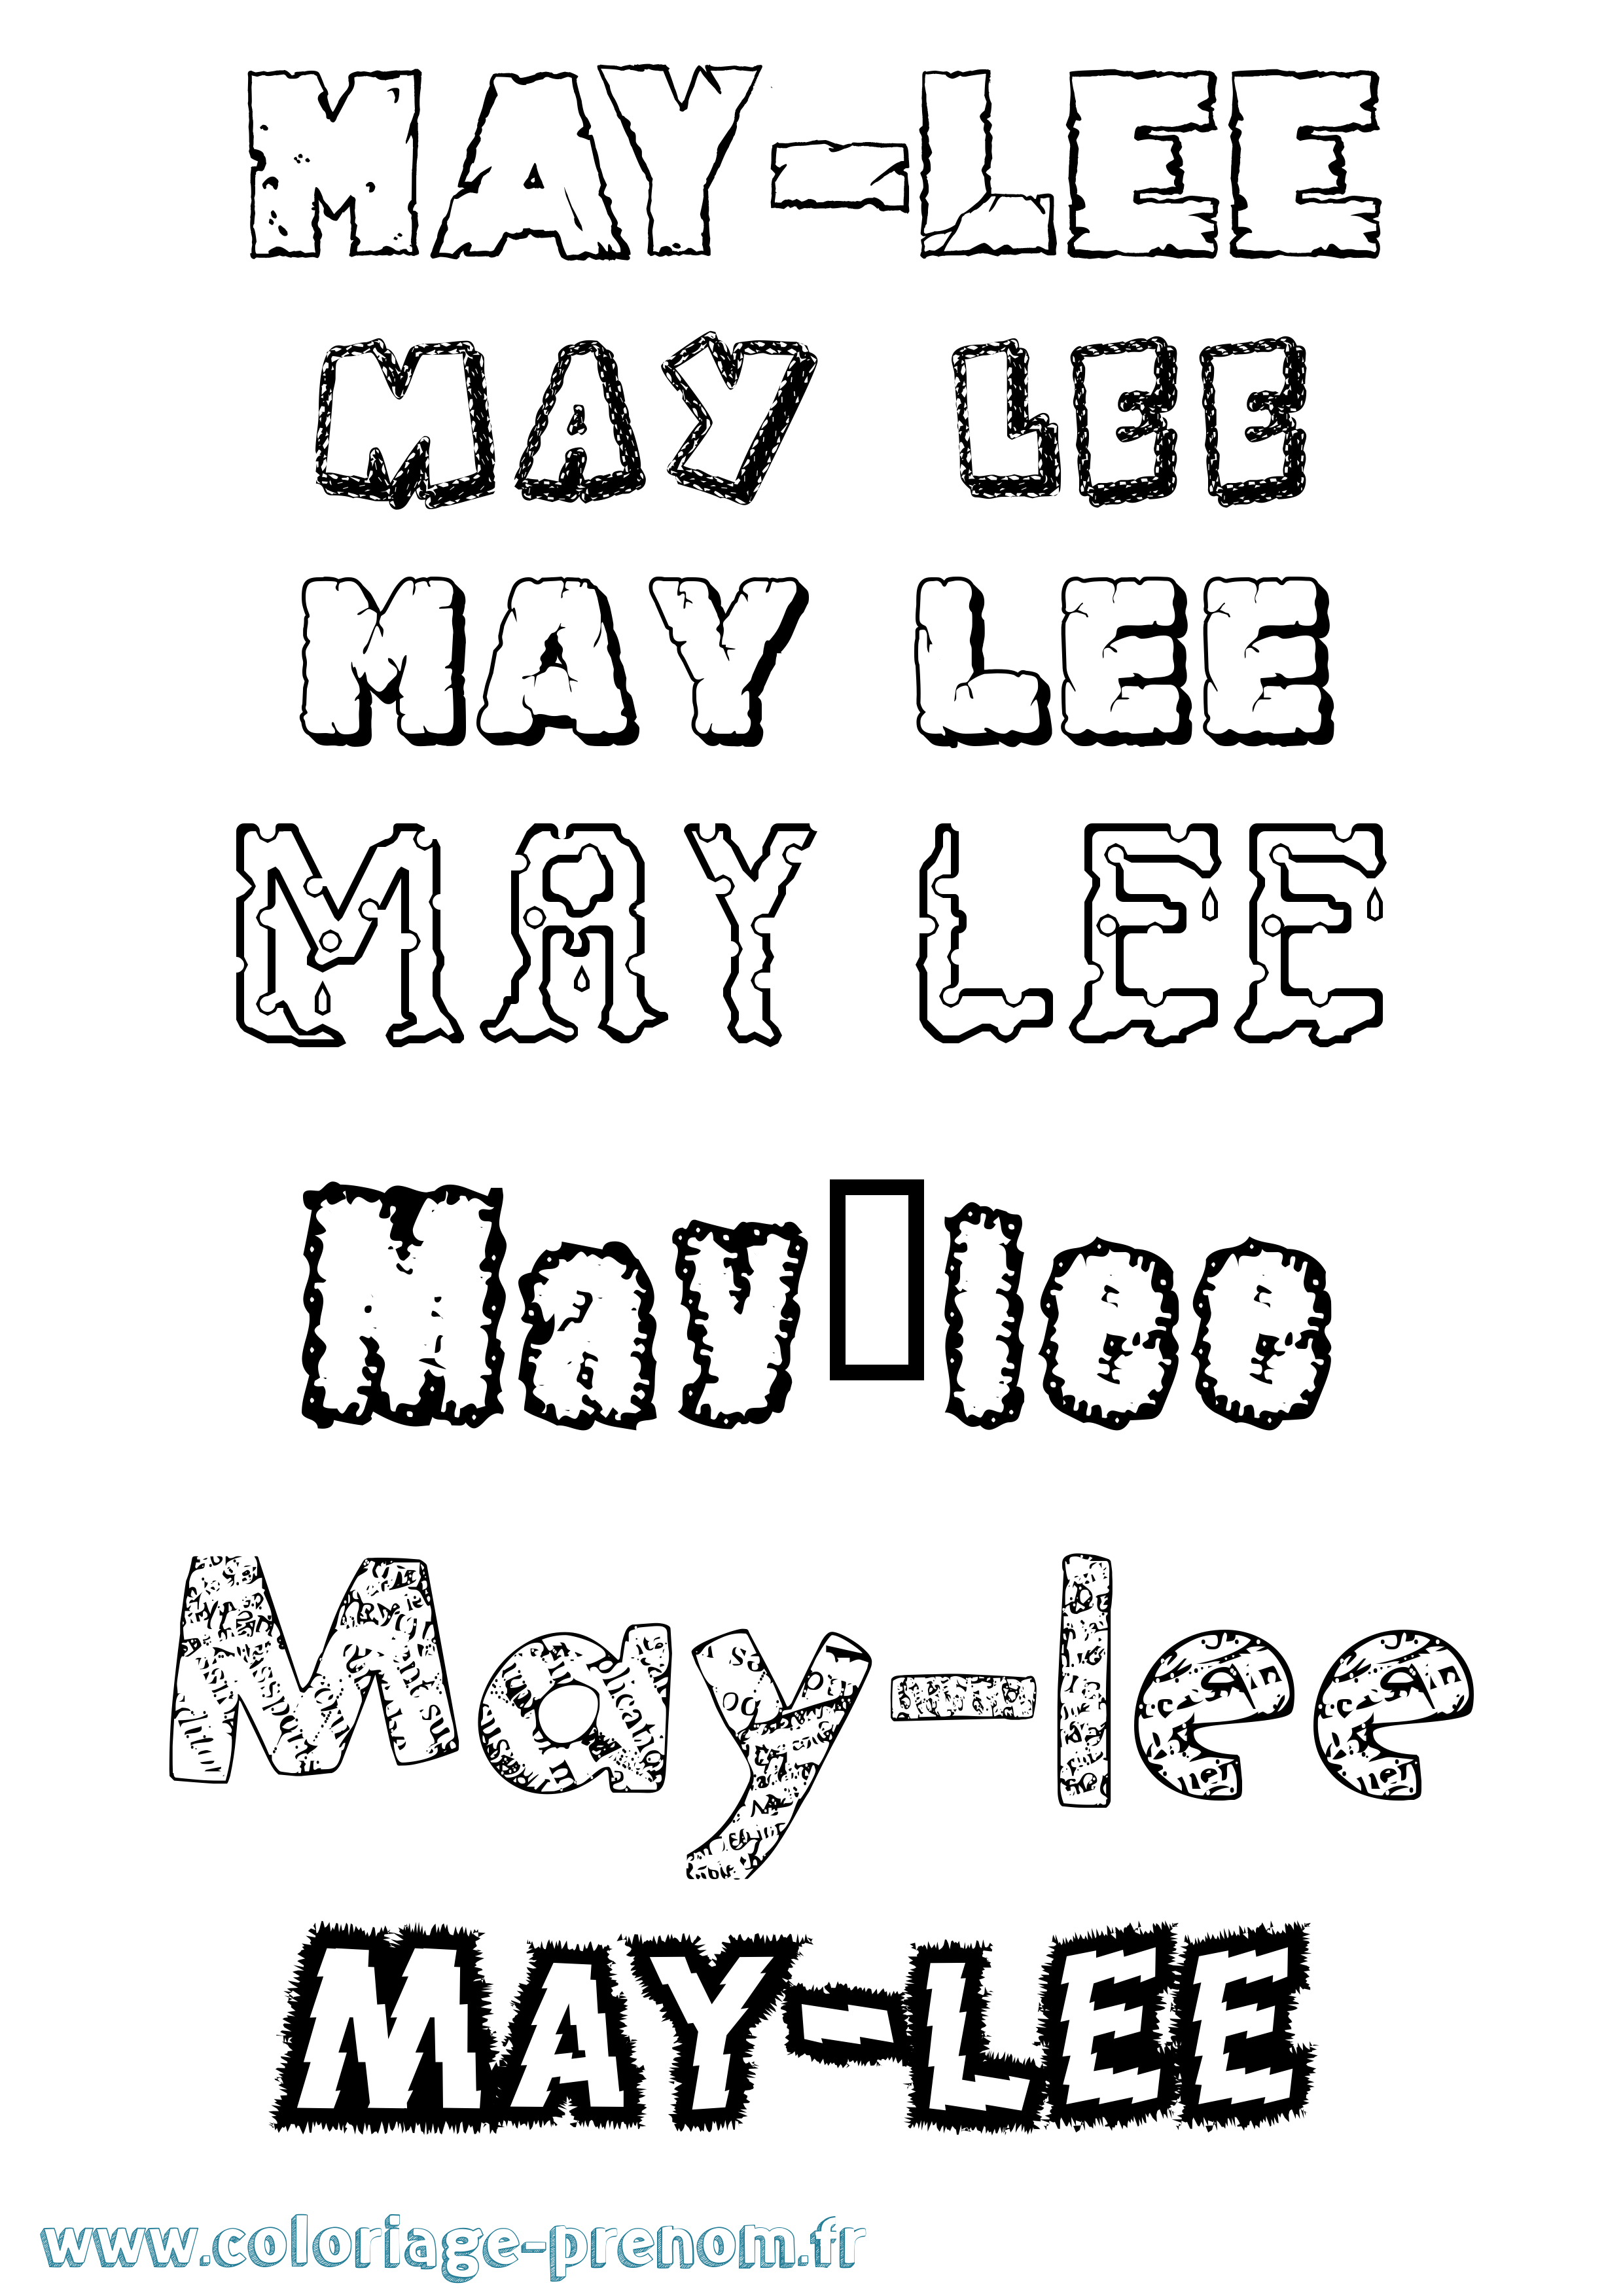 Coloriage prénom May-Lee Destructuré